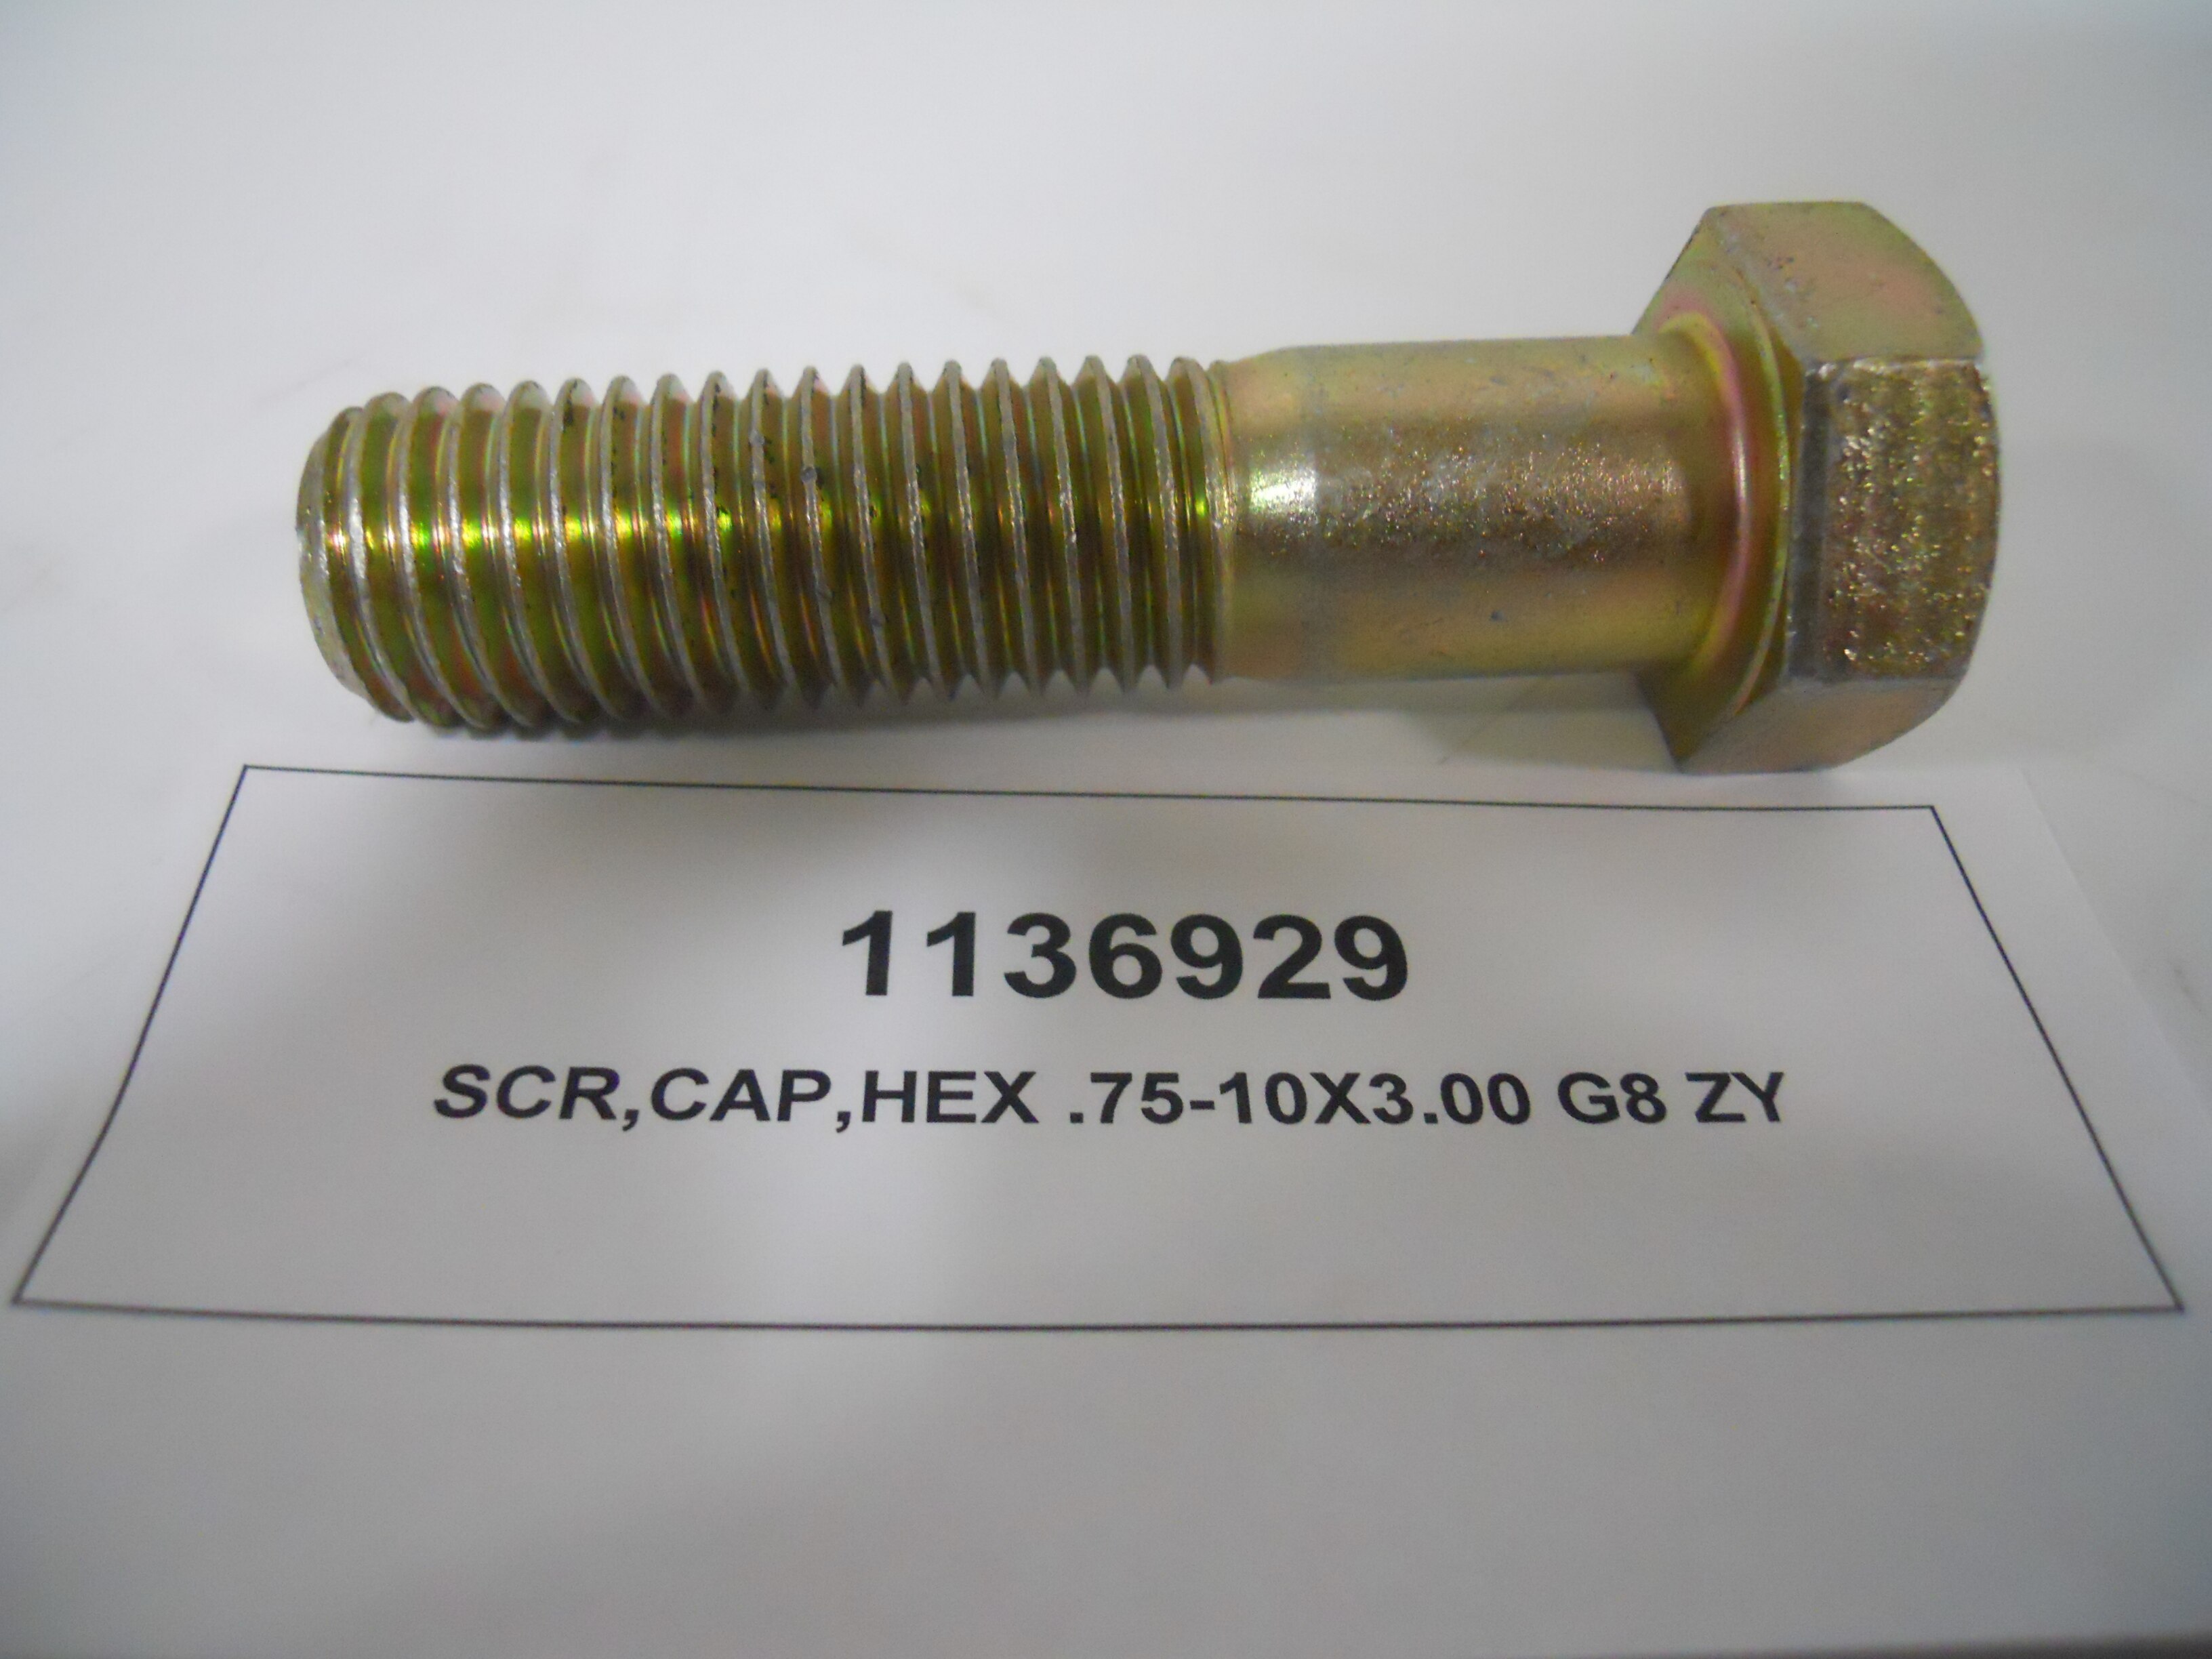 SCR,CAP,HEX .75-10X3.00 G8 ZY